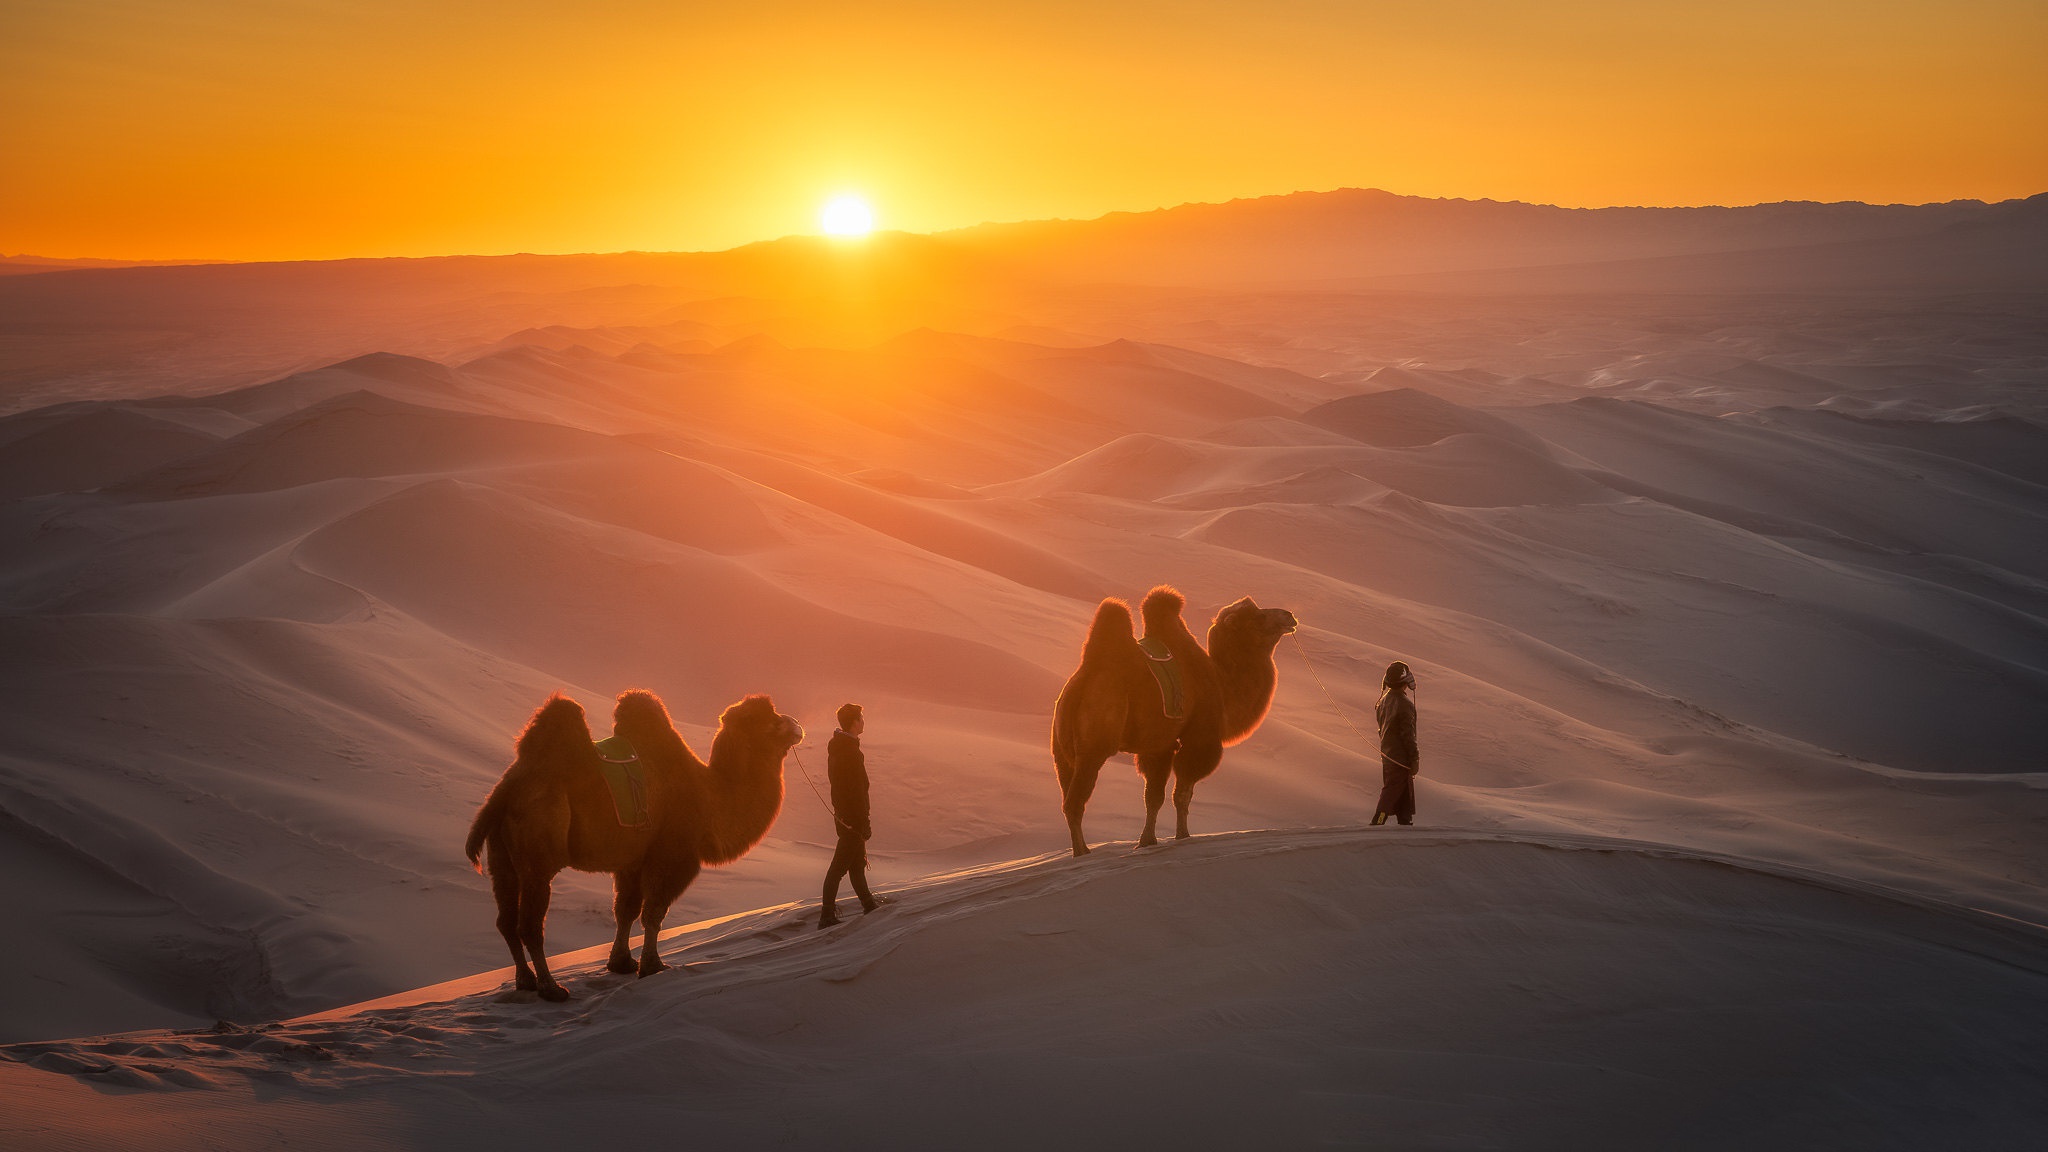 Караван давай. Бедуин на верблюде. Караван Мекка пустыня. Верблюд в пустыне. Караван в пустыне.